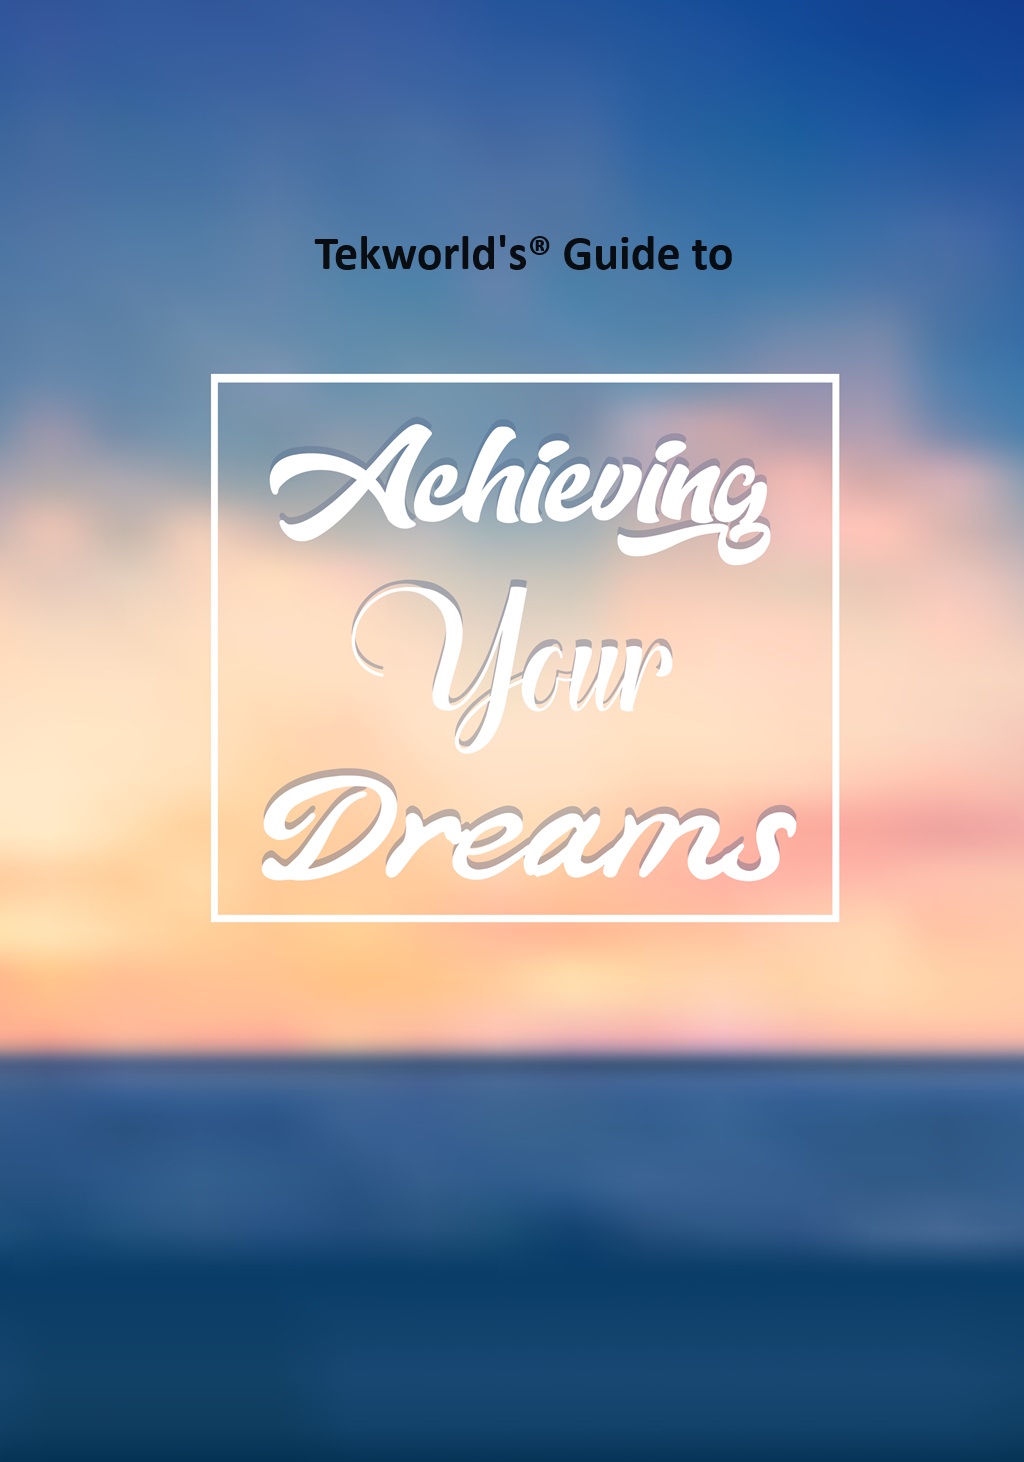 Tekworld's Achieving Your Dreams